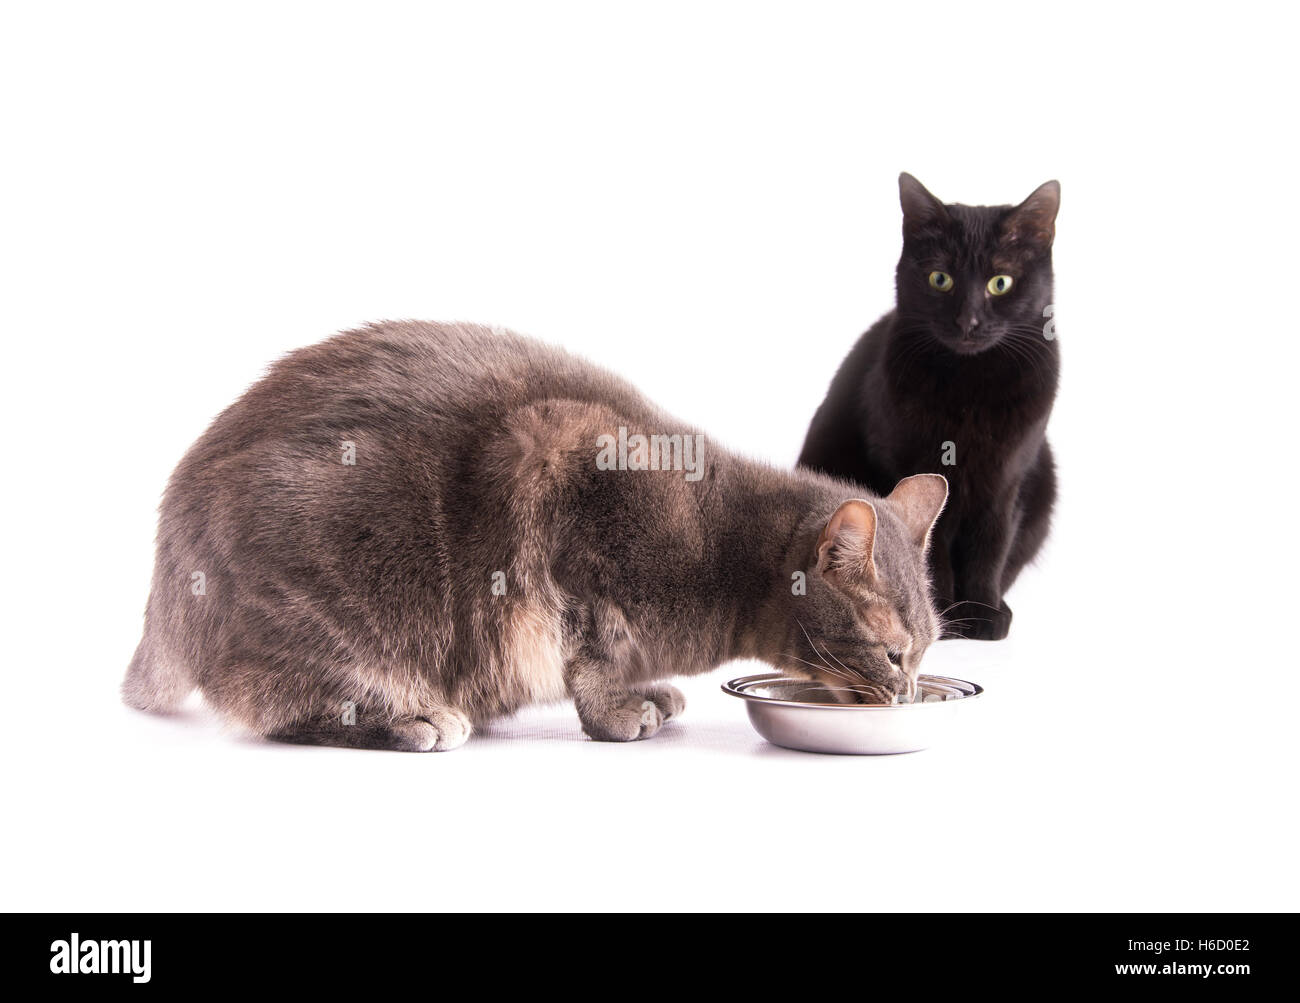 Blue tabby cat di mangiare da una ciotola di argento mentre un gatto nero è guardare su bianco Foto Stock